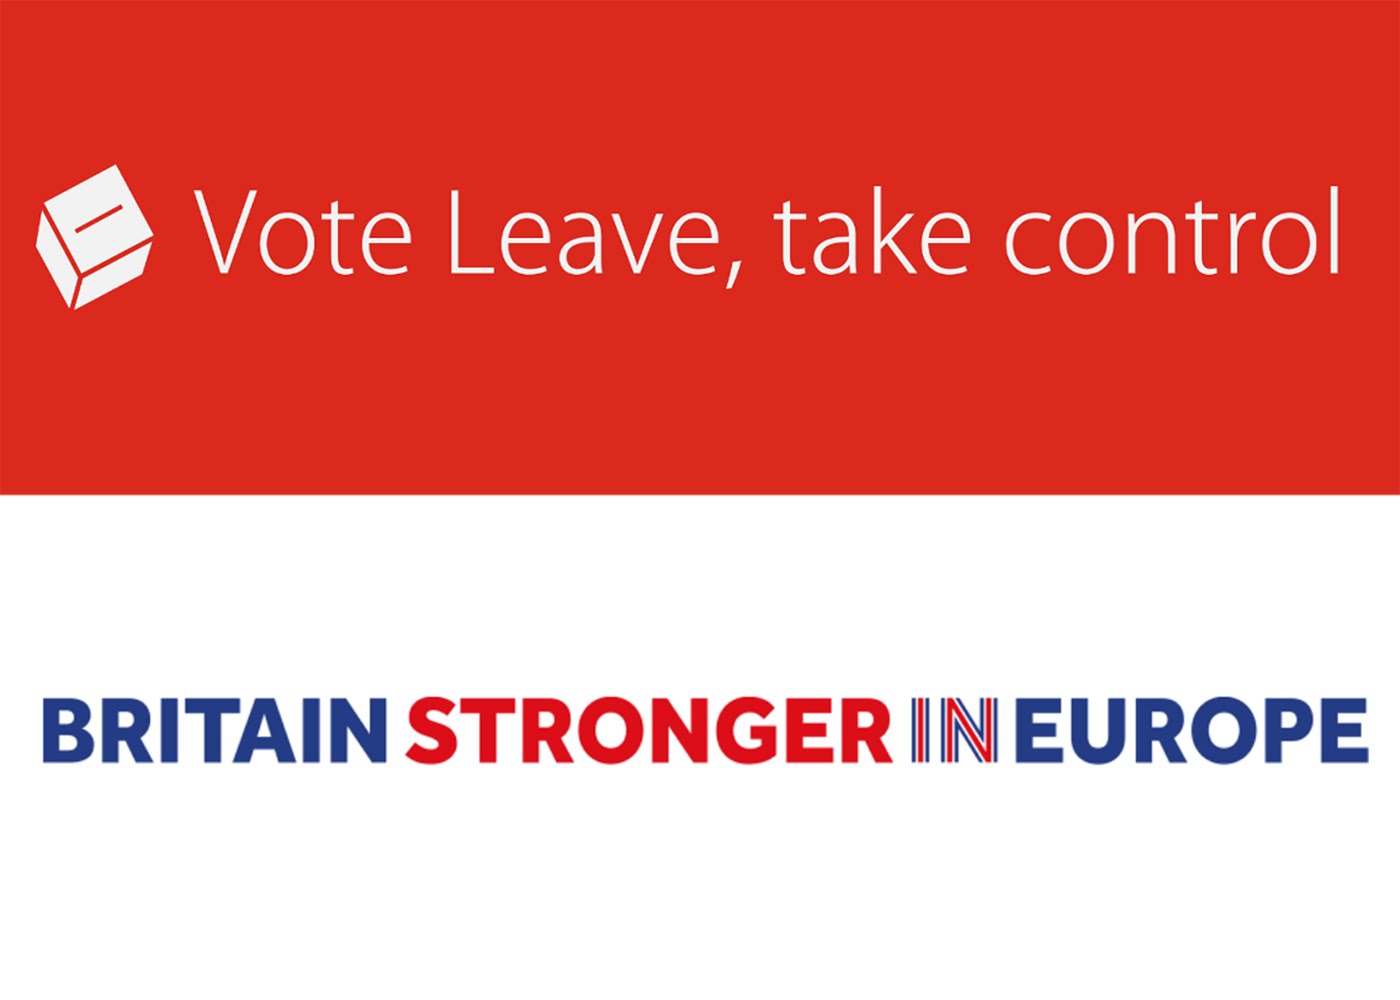 Official Brexit campaign slogans